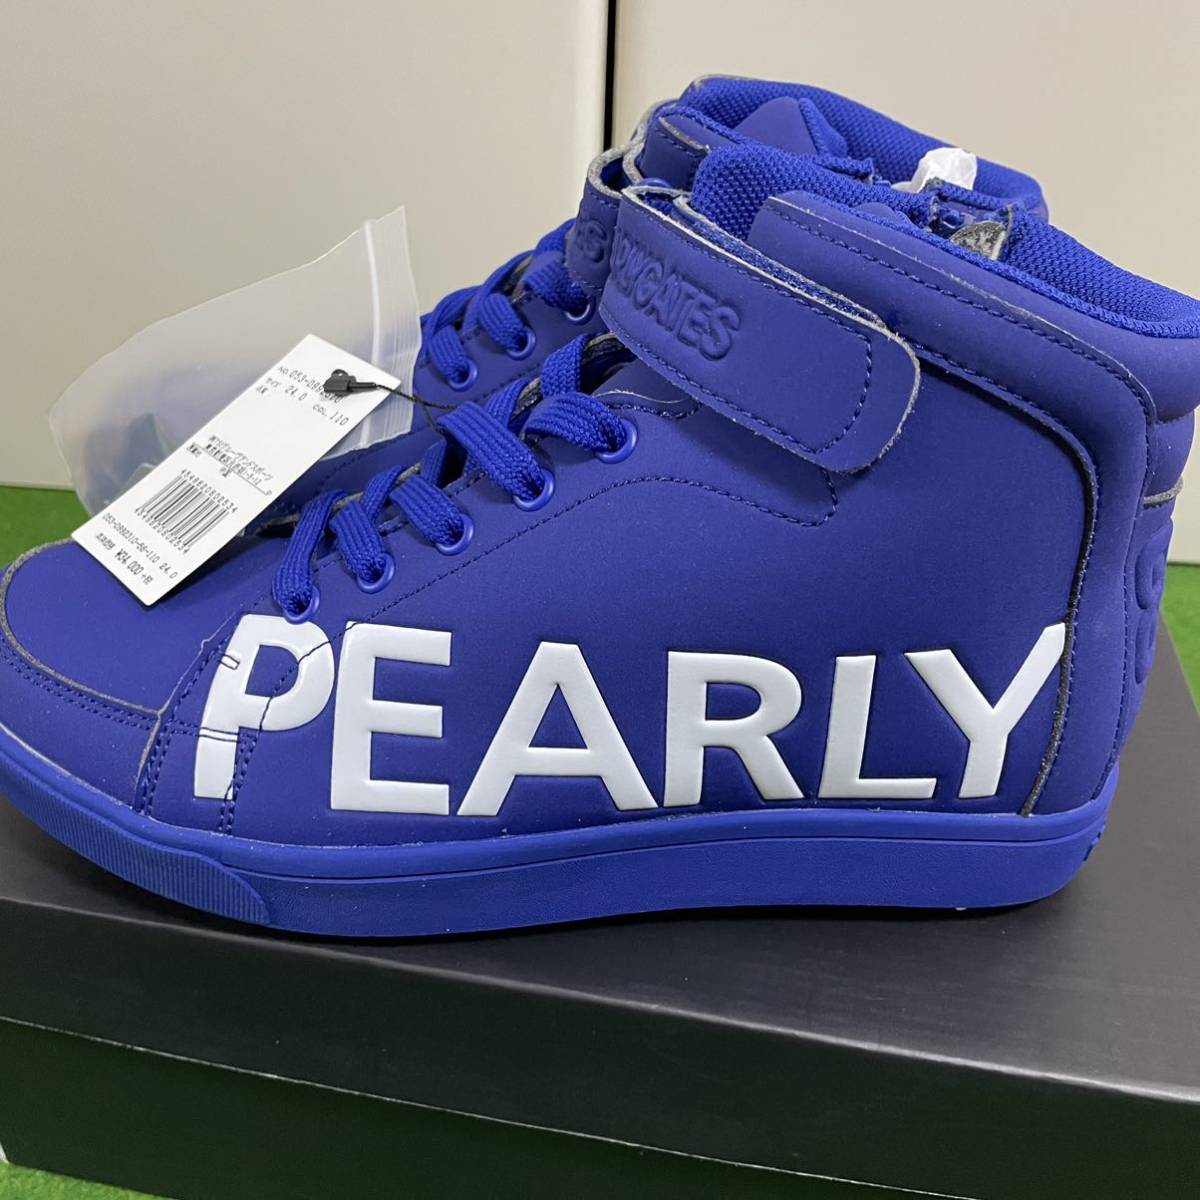 [ новый товар не использовался ]PEARLY GATES Pearly Gates * боковой Logo средний cut обувь 24.0cm туфли для гольфа голубой желтый цвет шиповки 